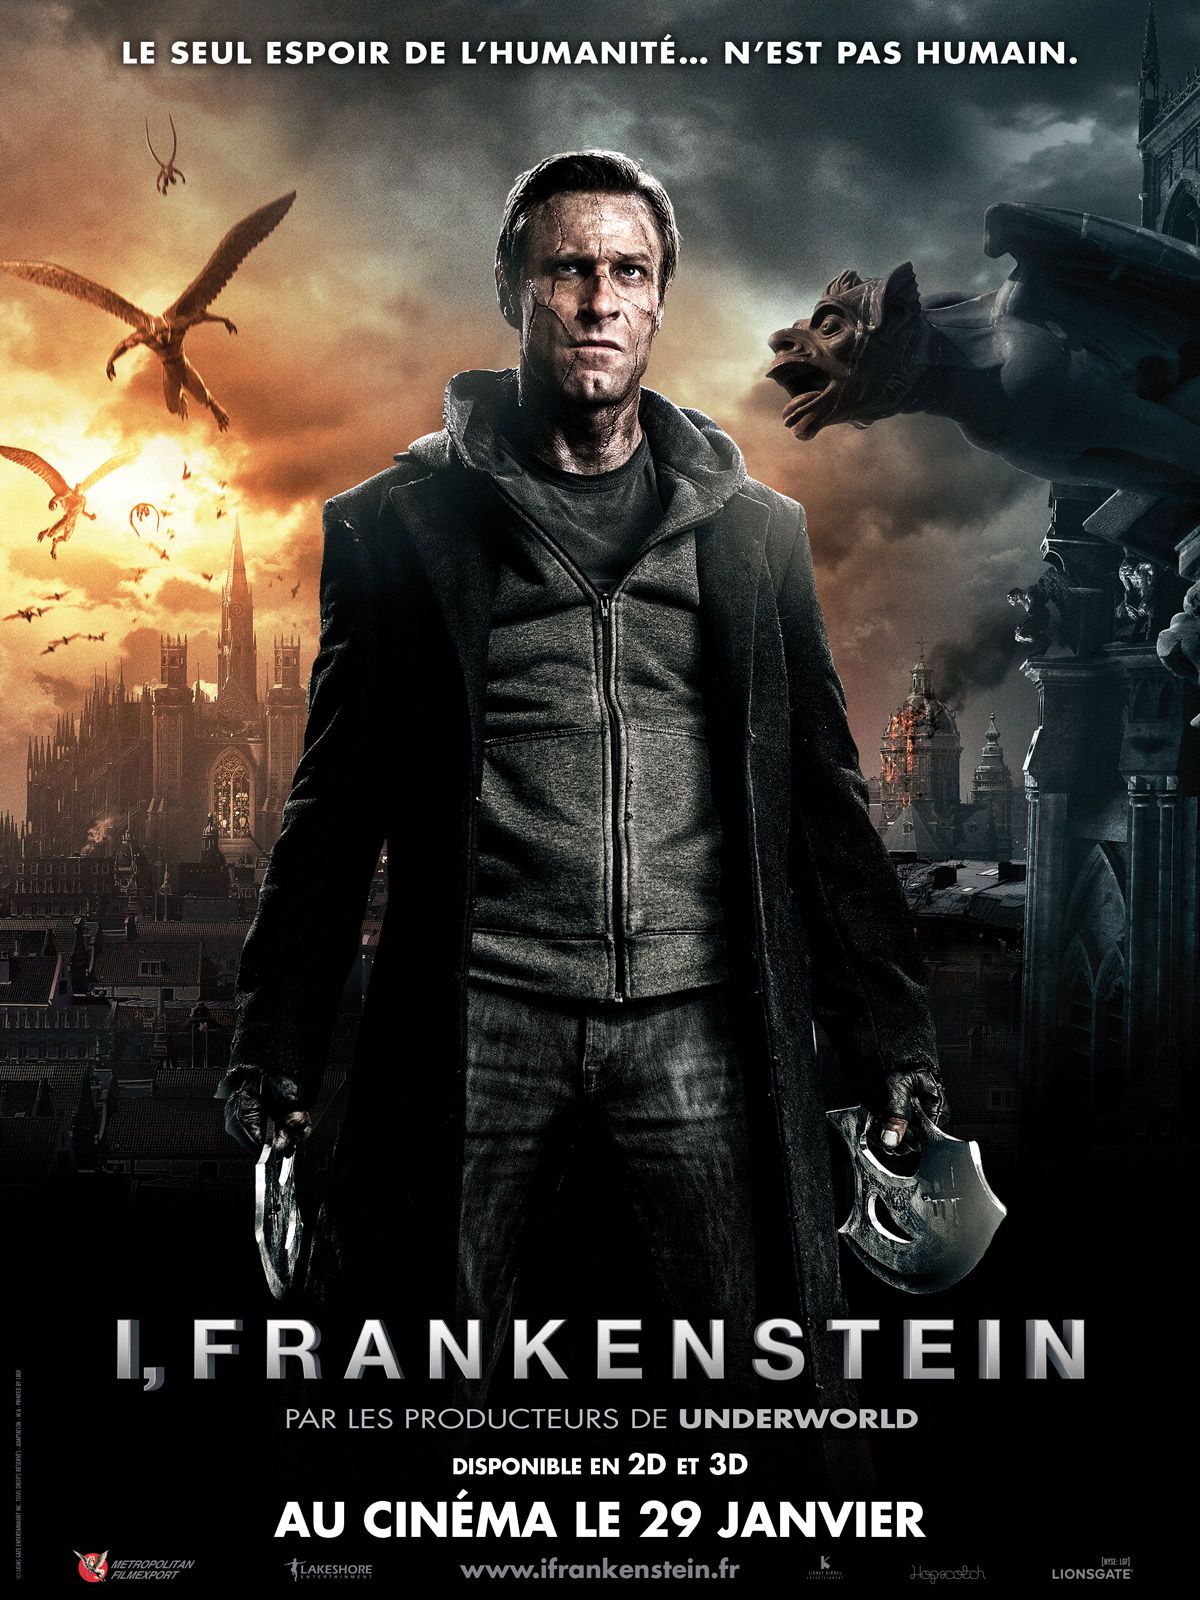 I, Frankenstein - Film (2014) streaming VF gratuit complet